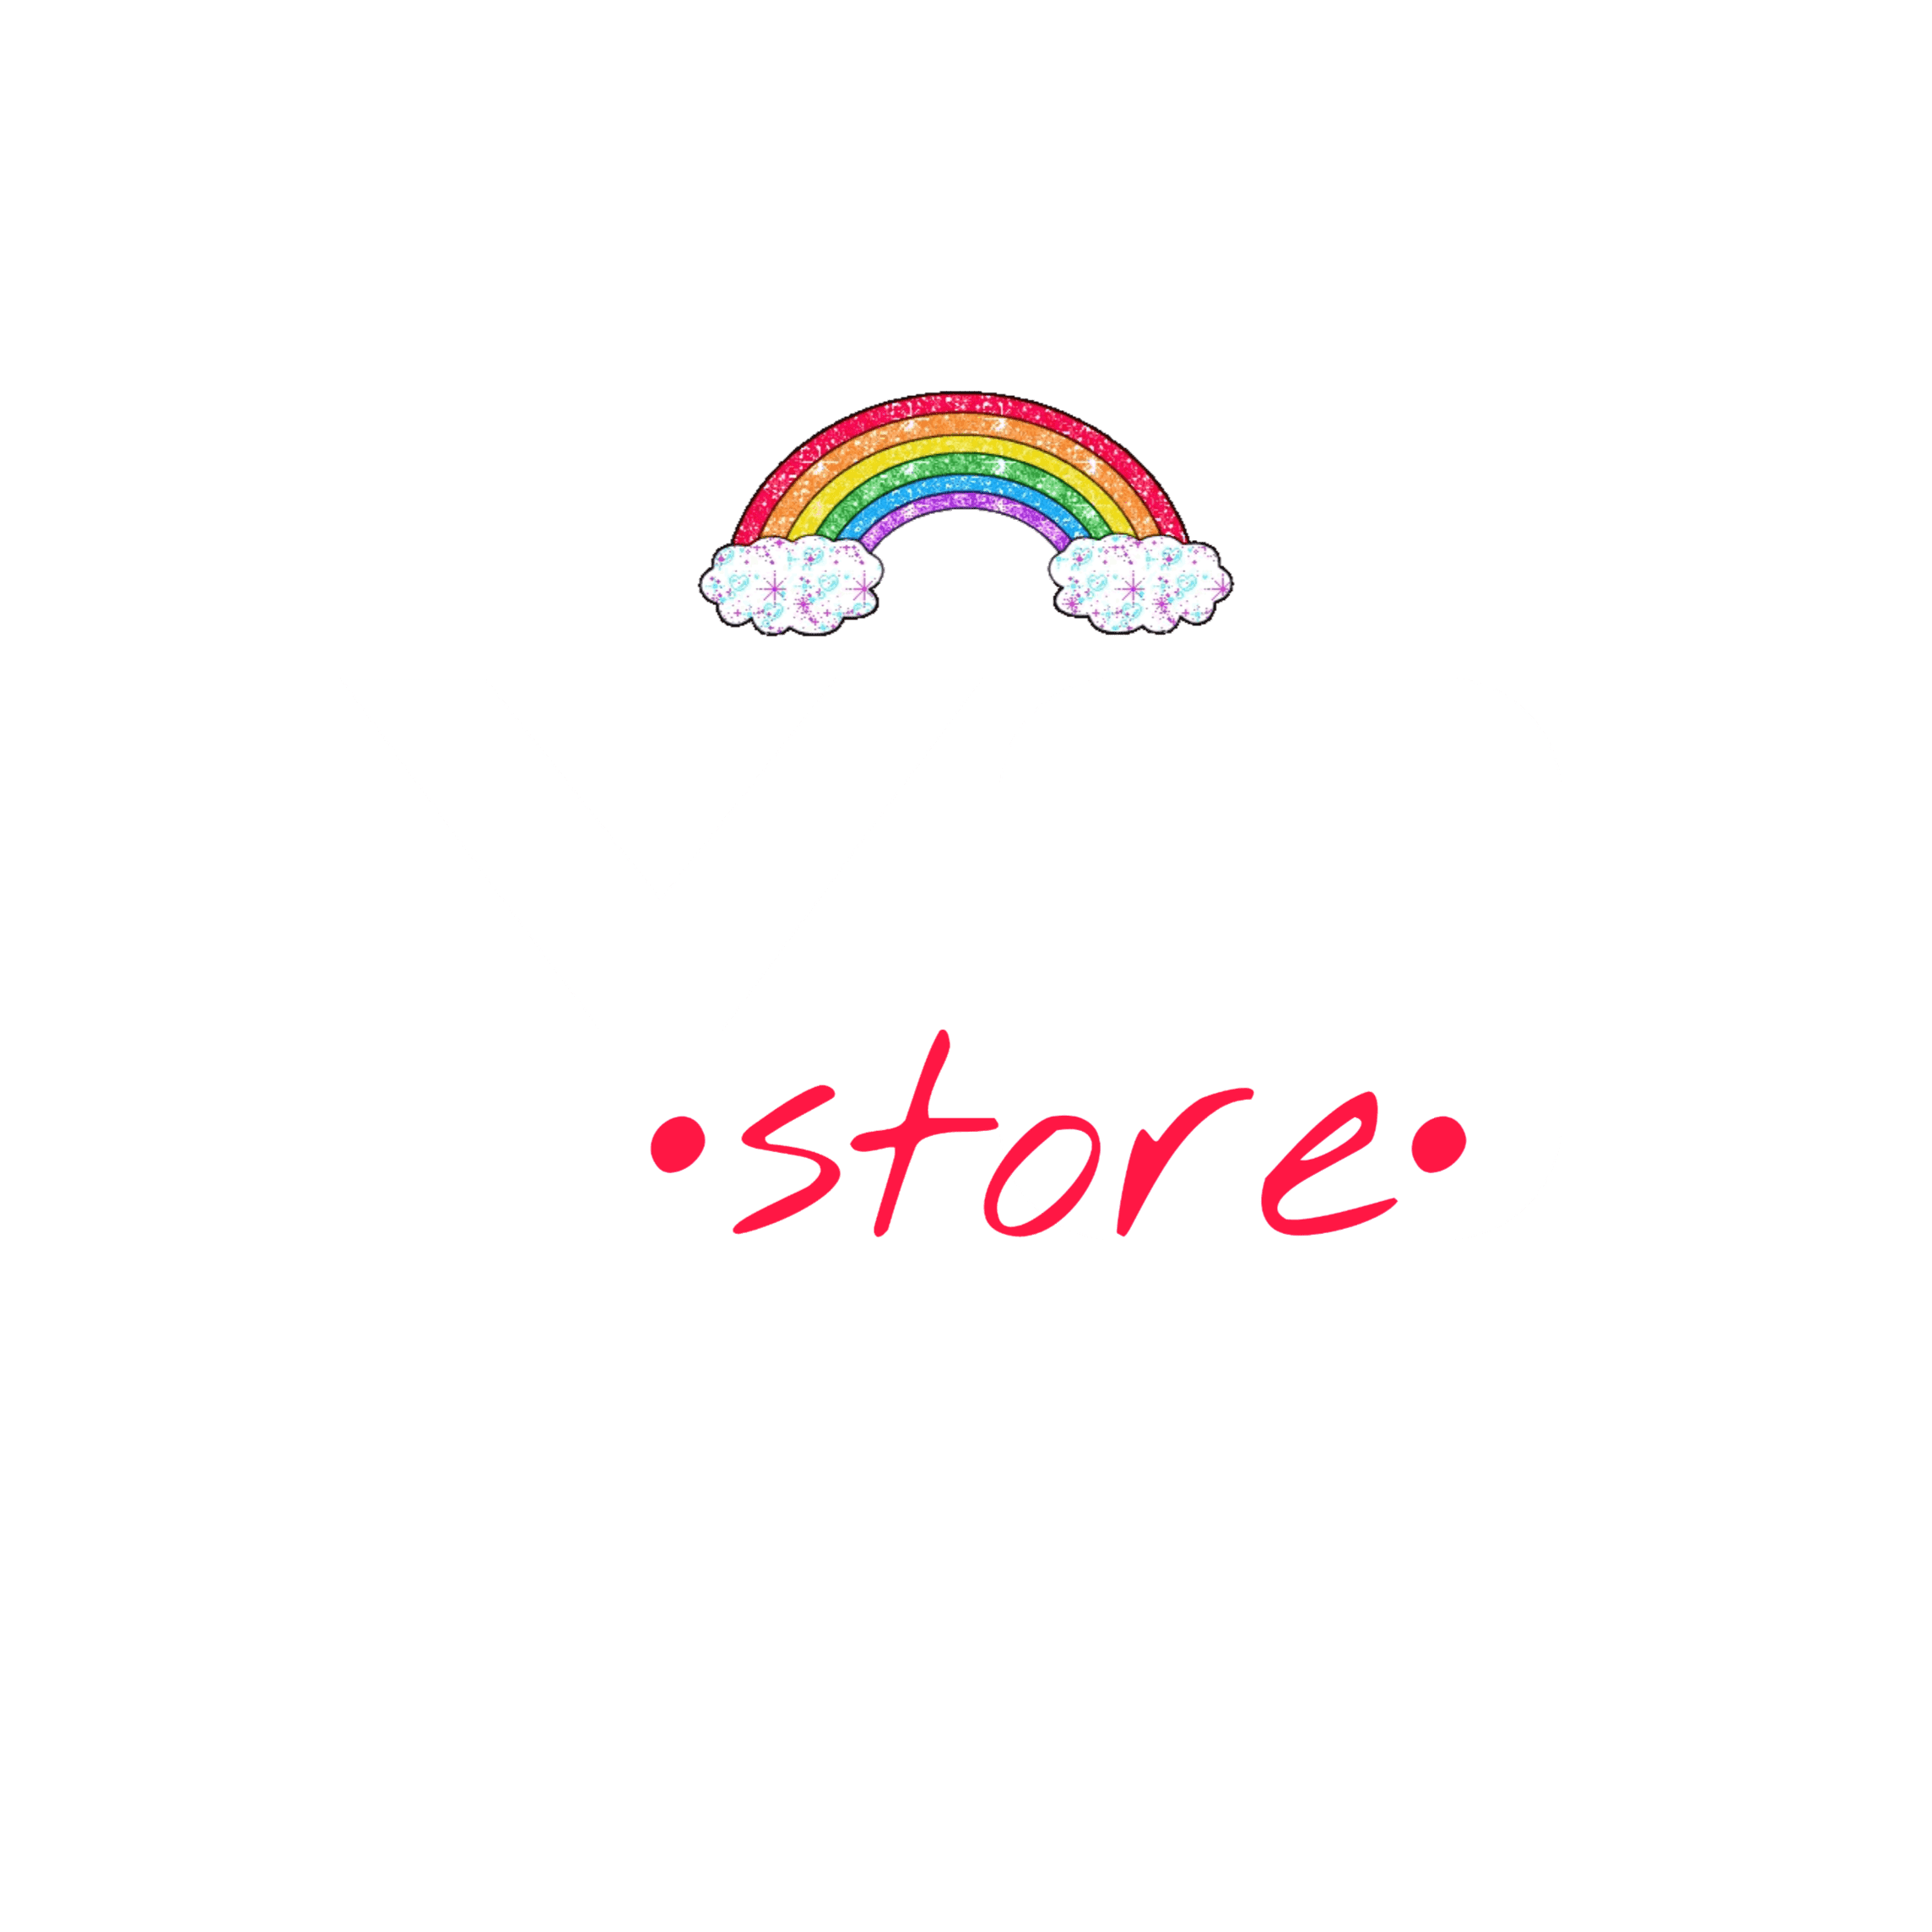 YG Store